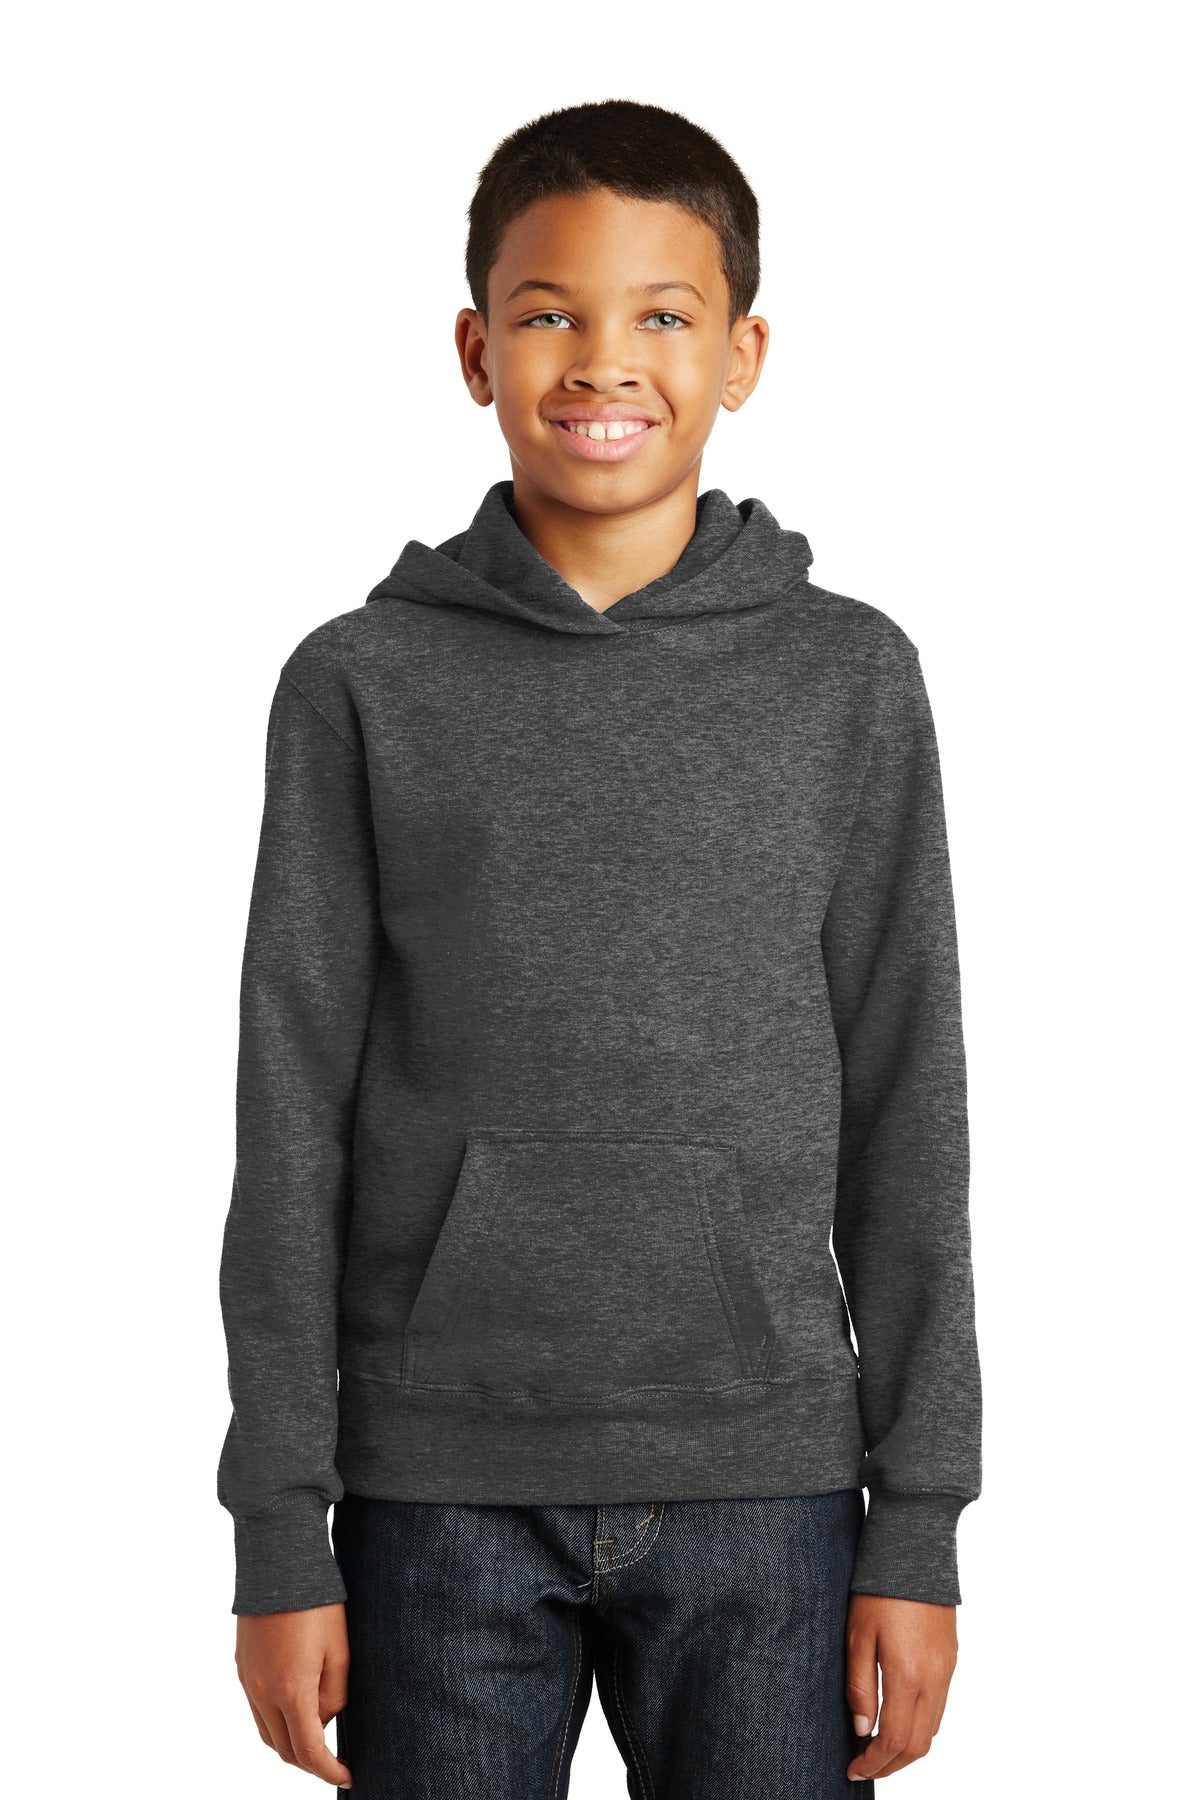 Port &amp; Company® Youth Fan Favorite Fleece Pullover Hooded Sweatshirt. PC850YH